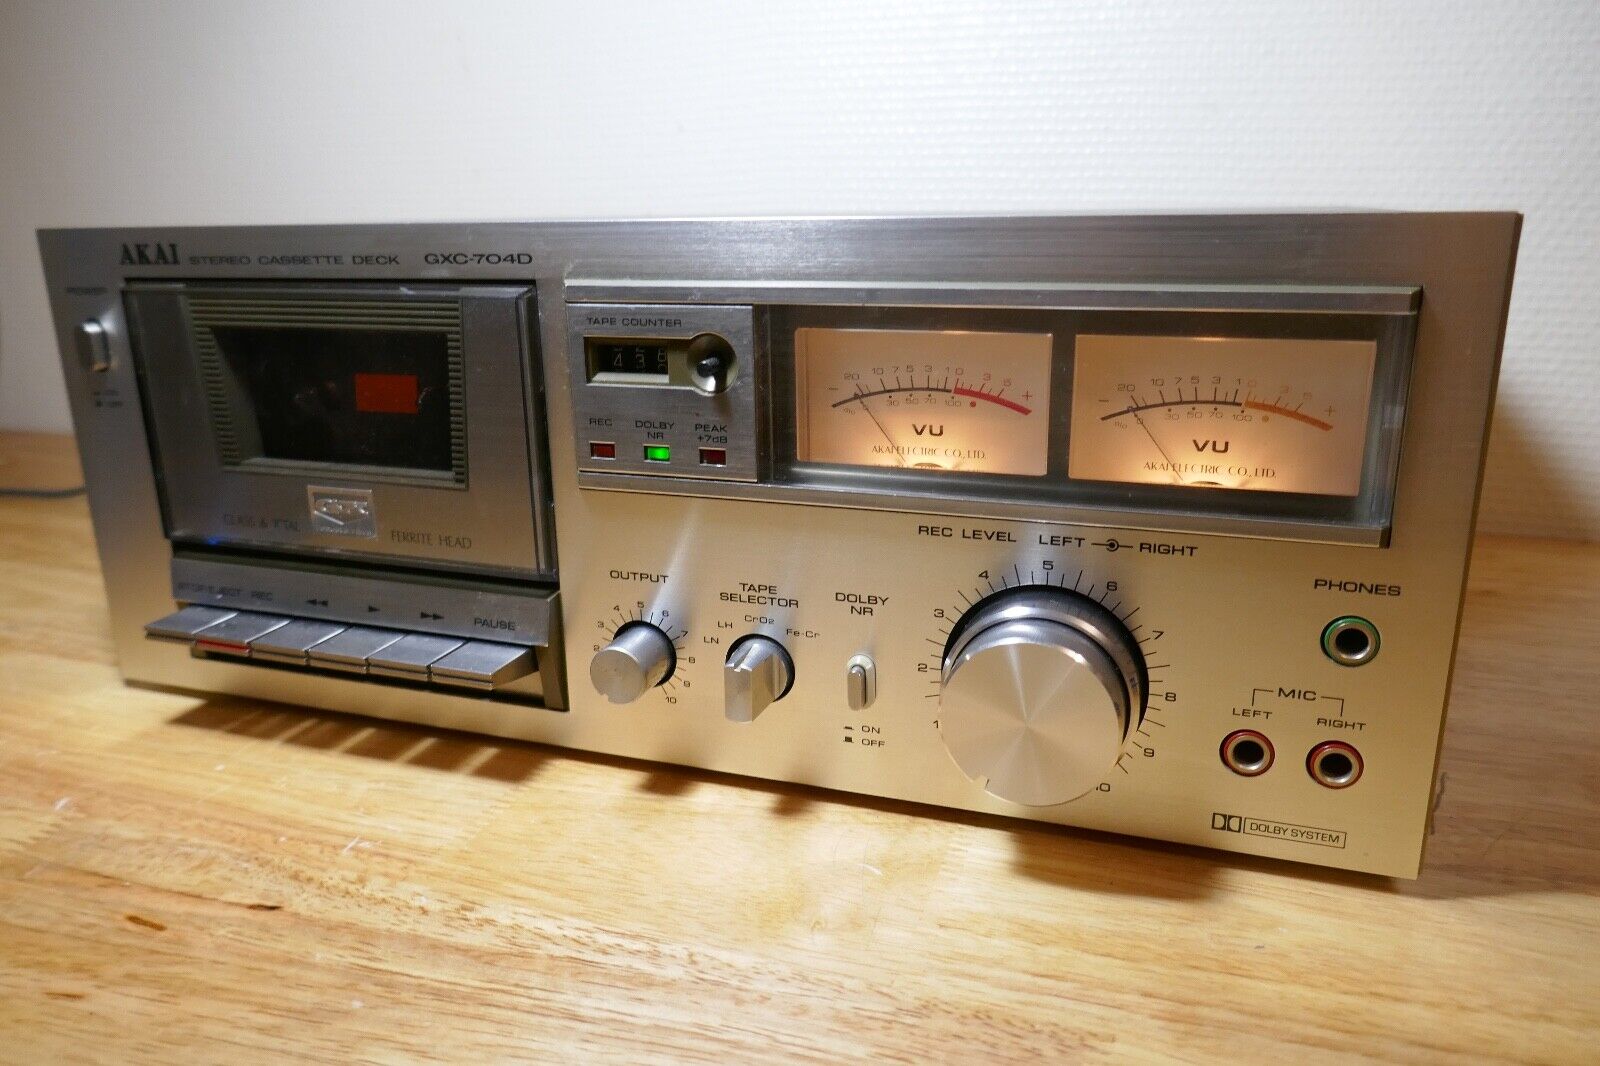 lecteur cassette tape deck Akai cs-704d vintage occasion